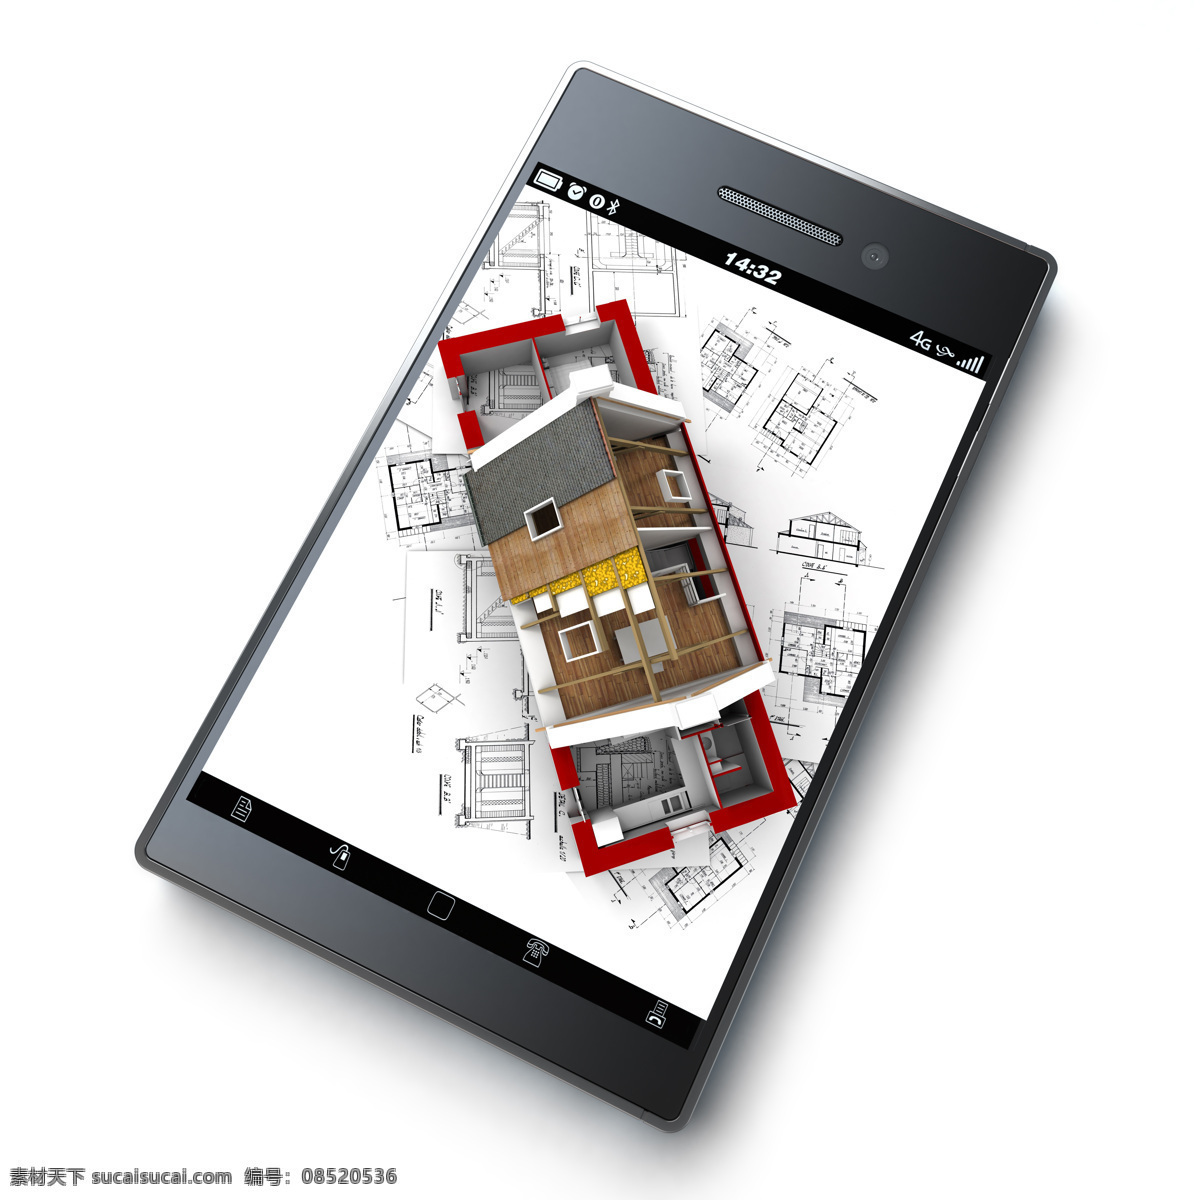 手机 中 立体 房屋 设计图 图纸 科技 手机图片 现代科技